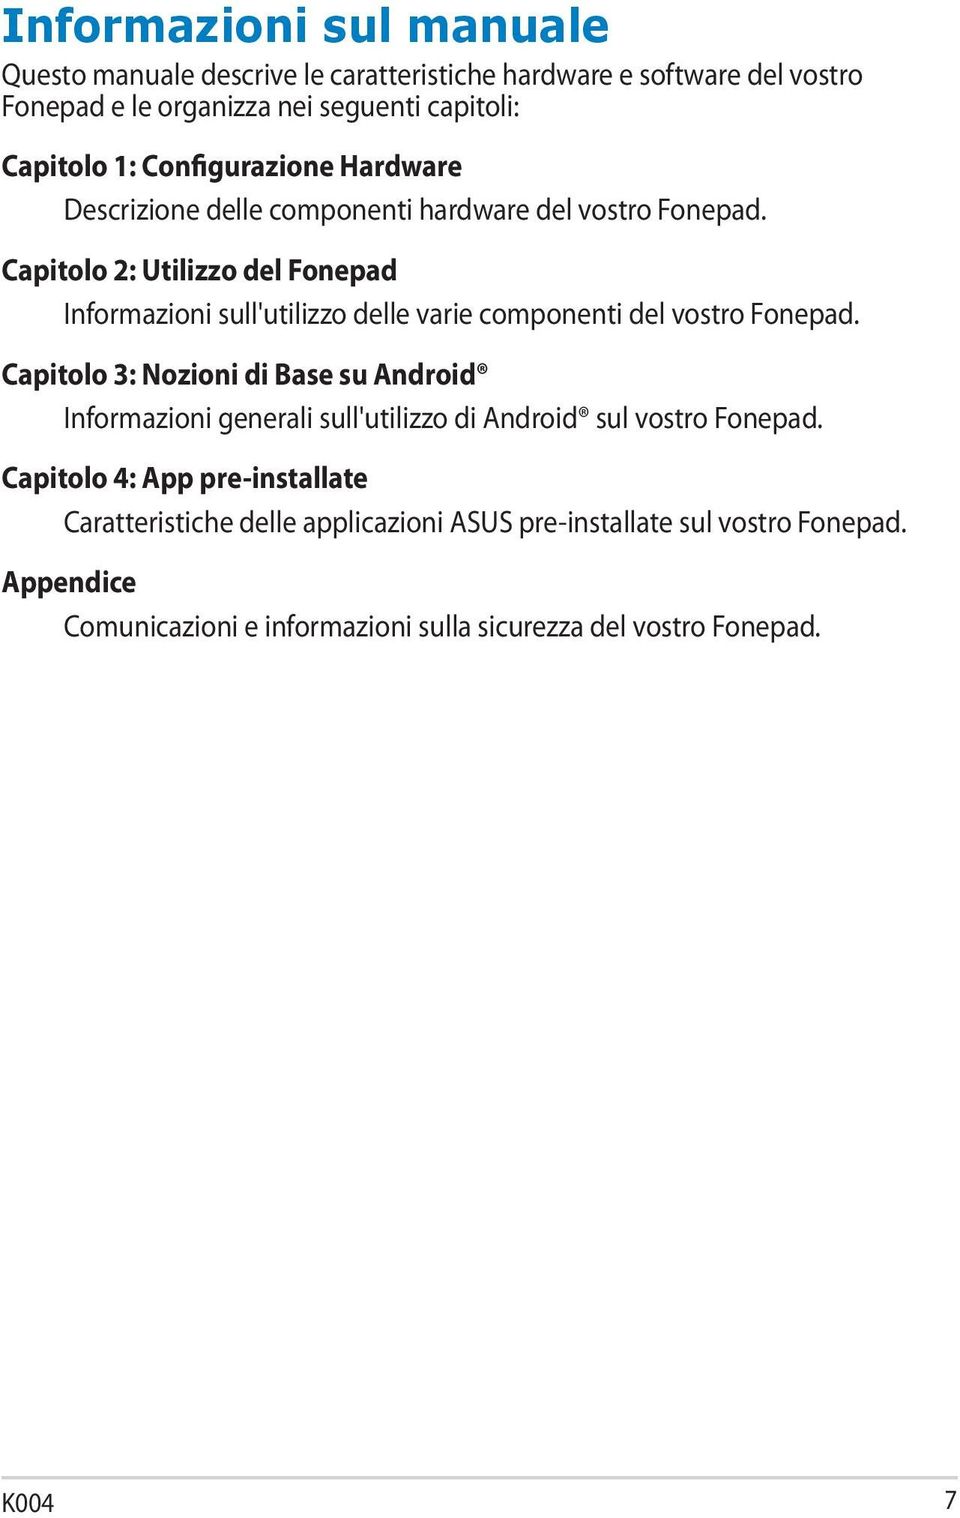 Capitolo 2: Utilizzo del Fonepad Informazioni sull'utilizzo delle varie componenti del vostro Fonepad.